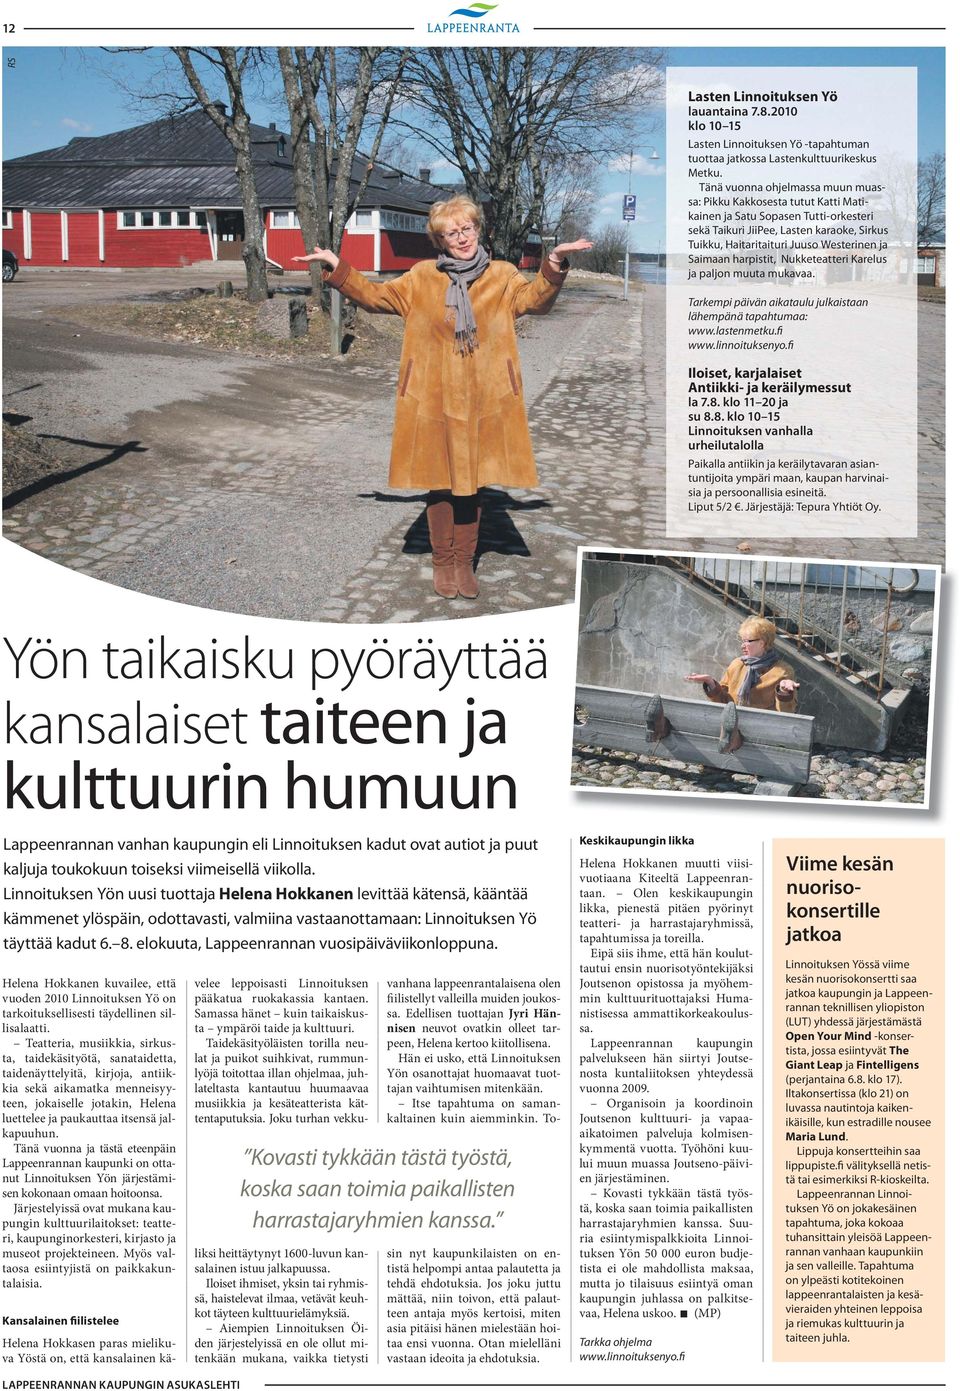 Saimaan harpistit, Nukketeatteri Karelus ja paljon muuta mukavaa. Tarkempi päivän aikataulu julkaistaan lähempänä tapahtumaa: www.lasten metku.fi www.linnoituksenyo.